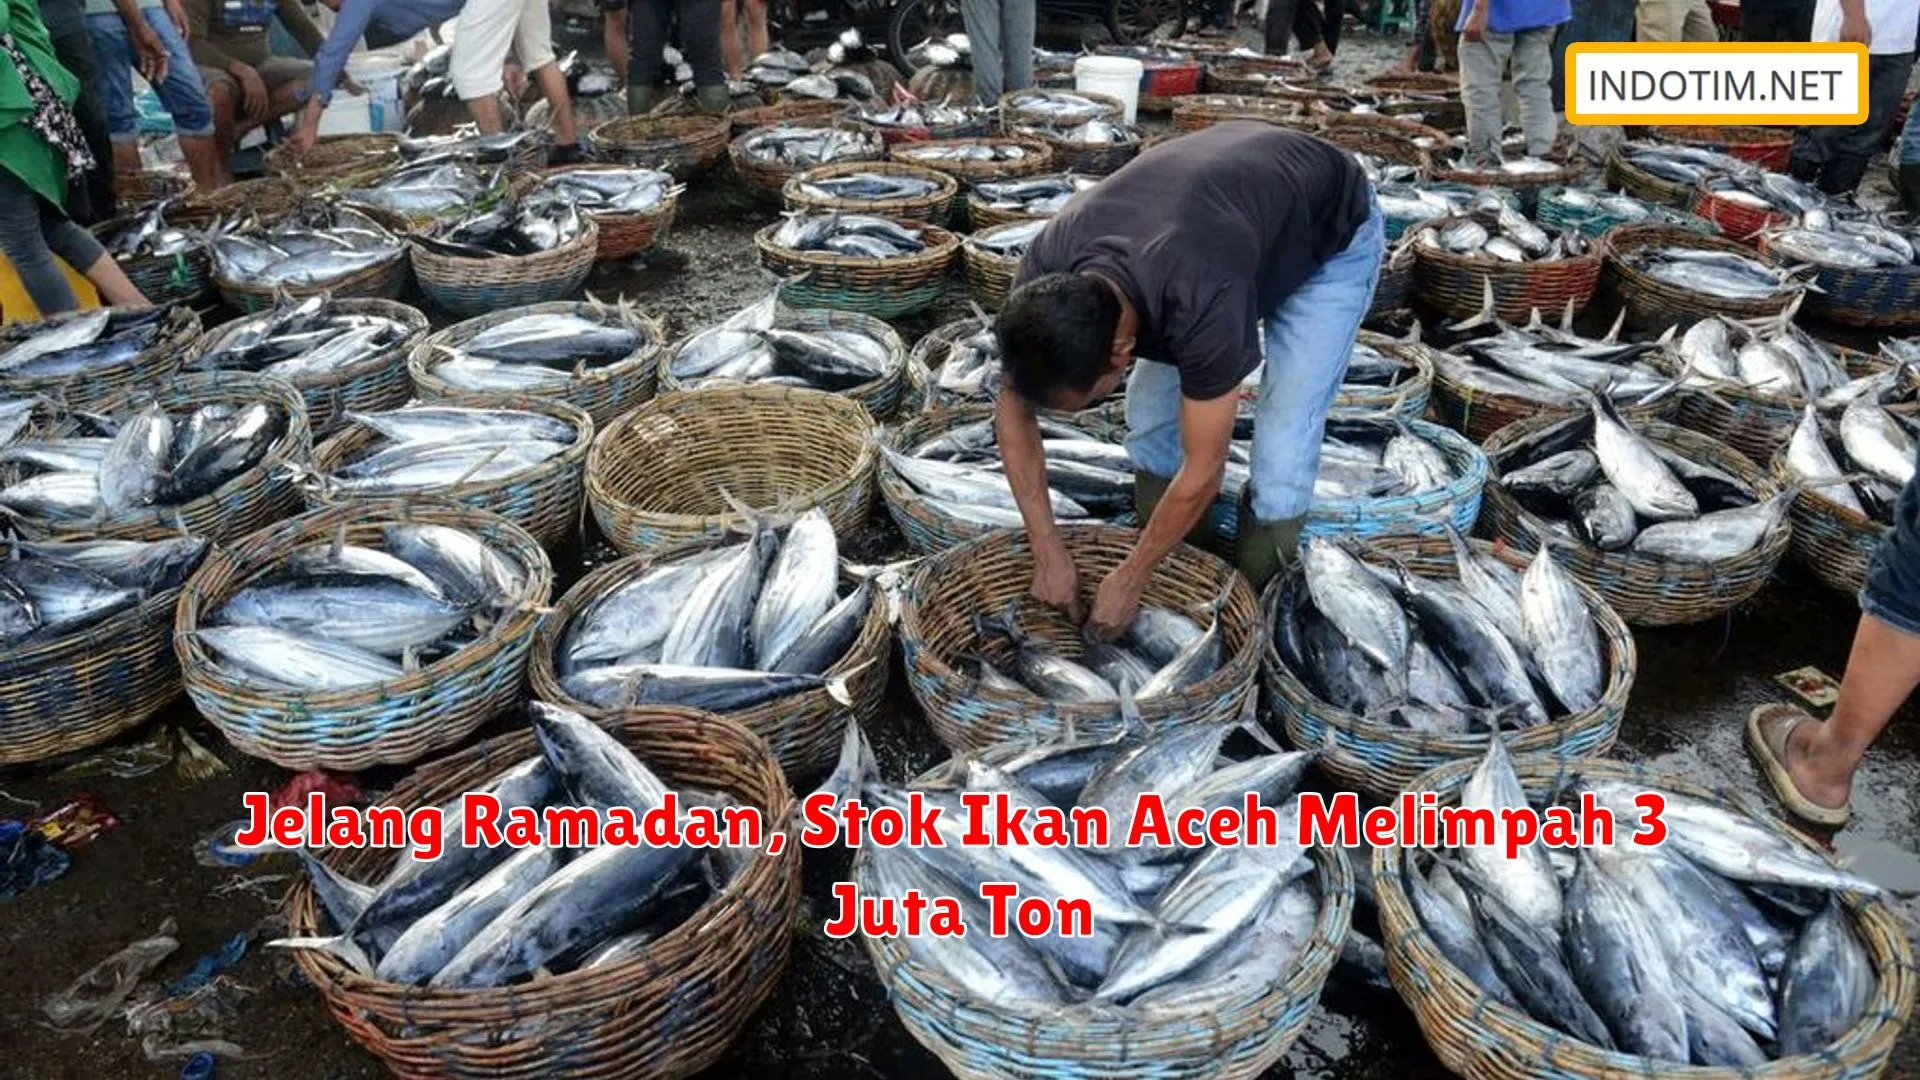 Jelang Ramadan, Stok Ikan Aceh Melimpah 3 Juta Ton